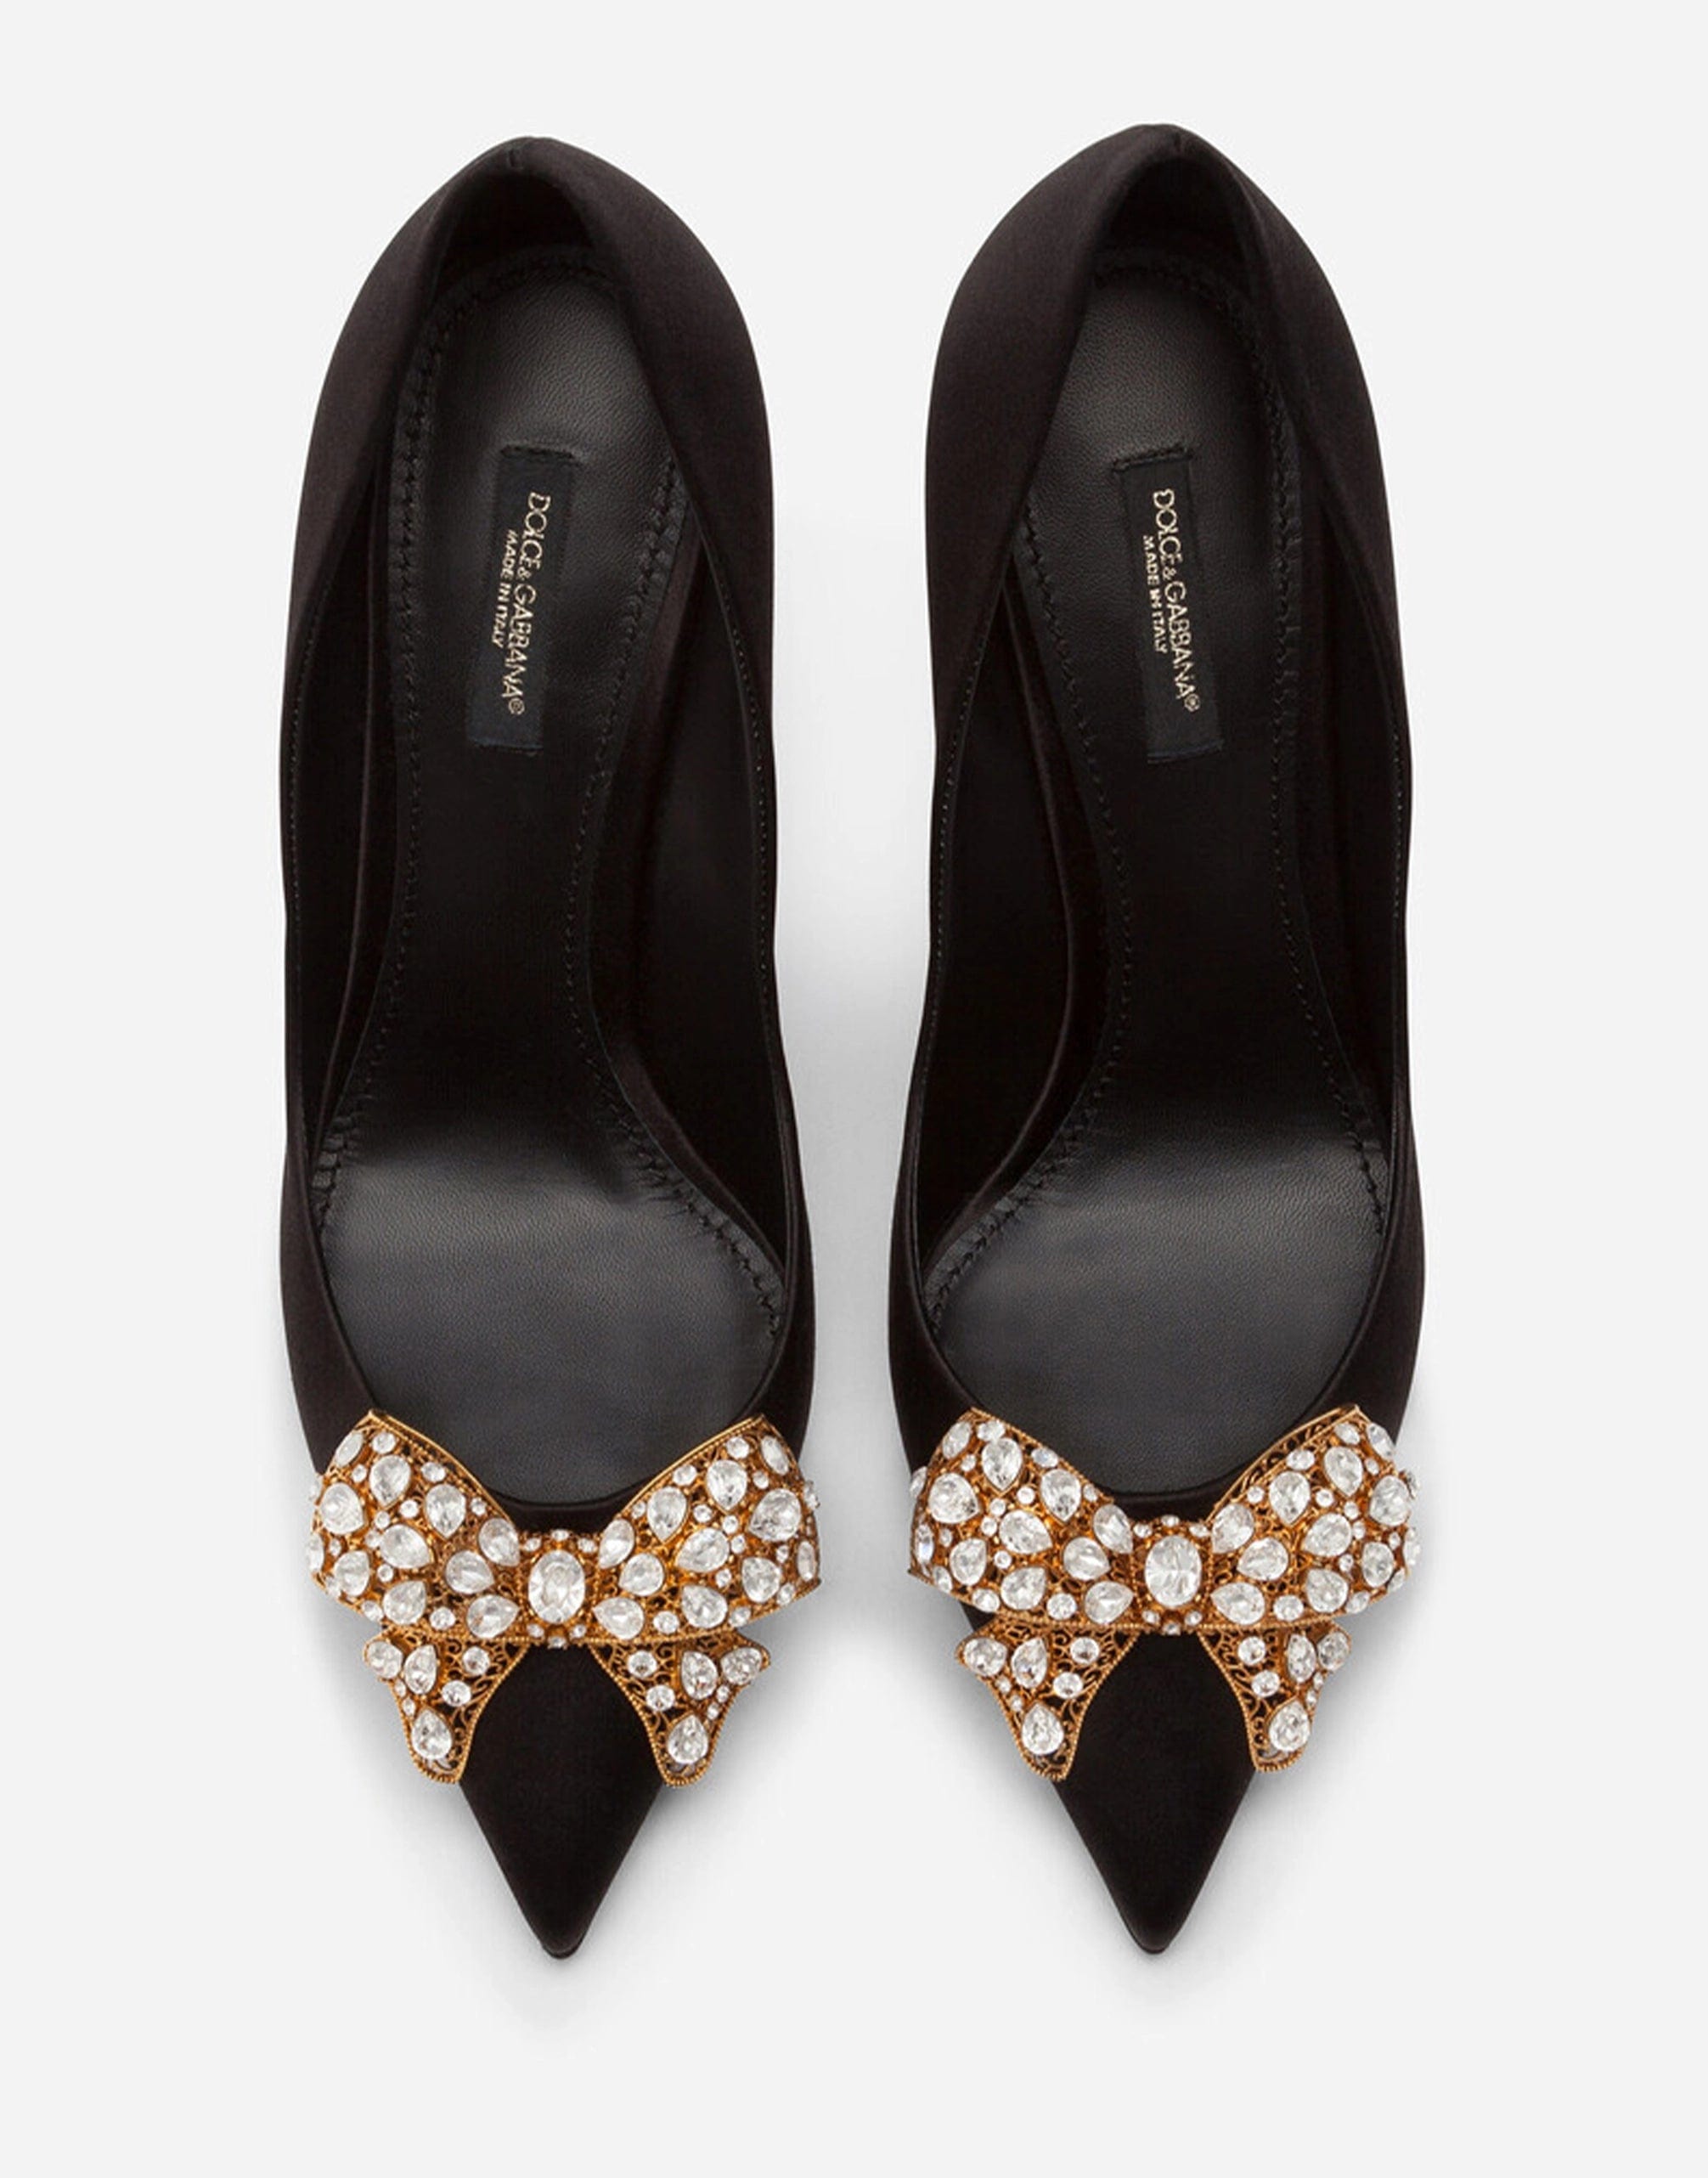 Dolce & Gabbana Bejeweled Satin Embellished Pumps